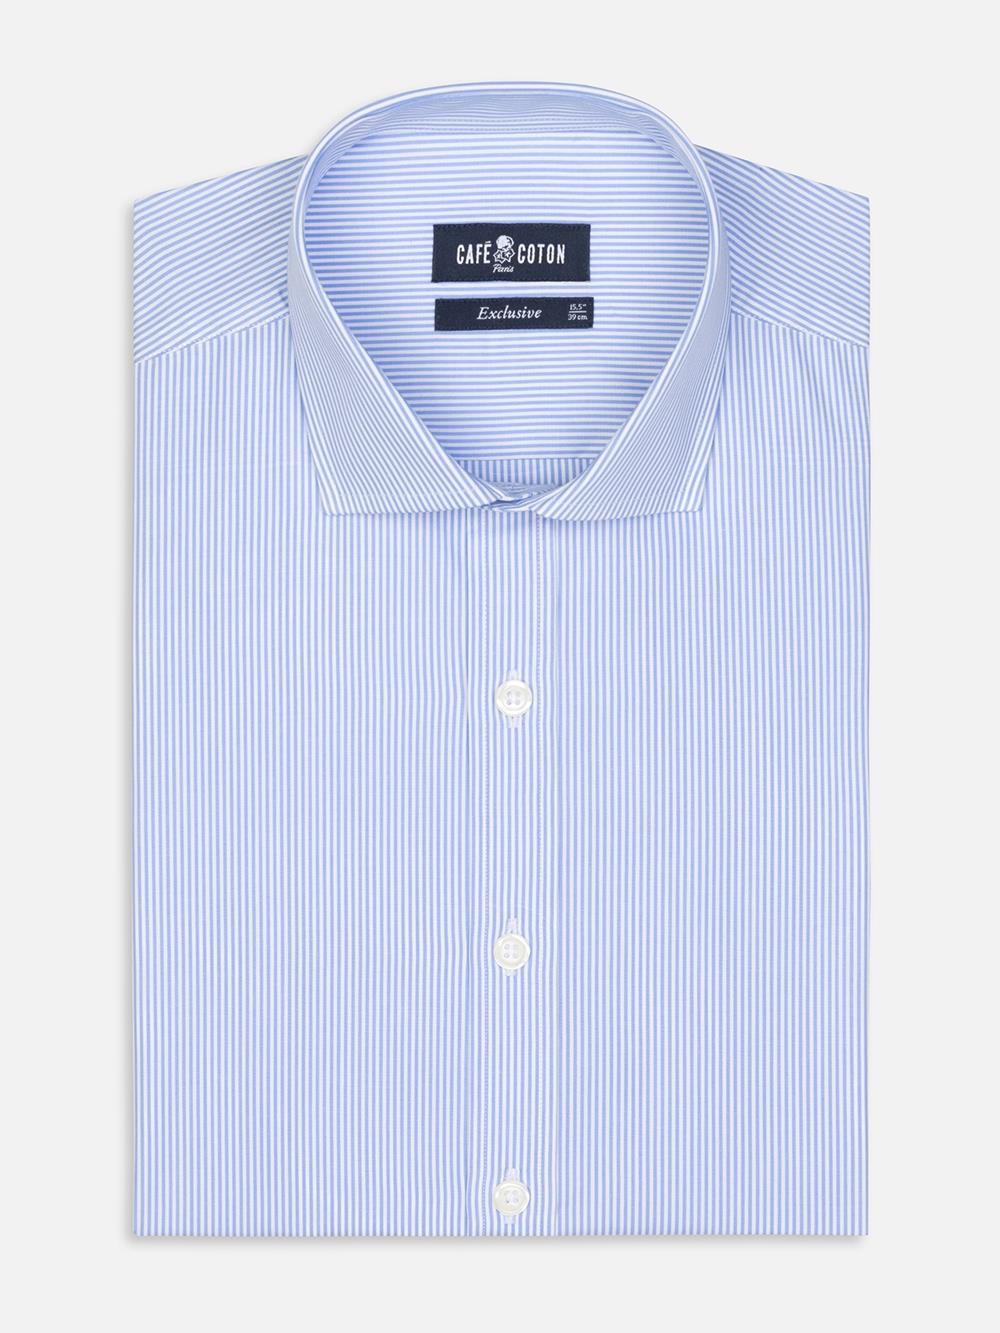 Menthon-Tailliertes Hemd mit himmelblauen Streifen - Große Ärmellänge